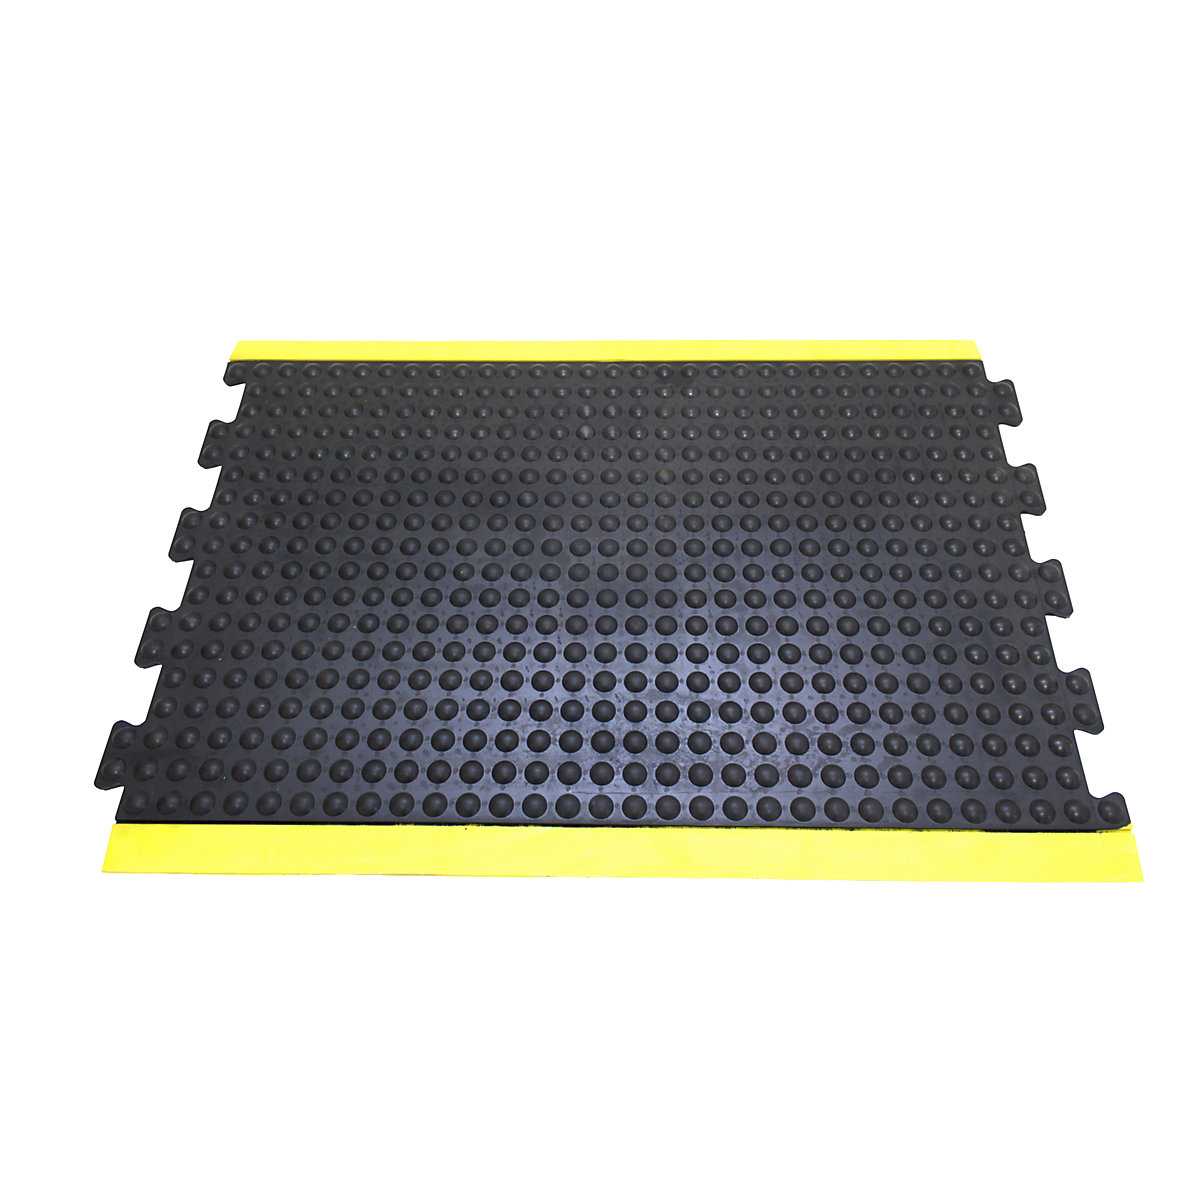 Anti-vermoeidheidsmat Bubblemat safety – COBA, l x b x h = 900 x 600 x 14 mm, zwart/geel, middenelement-4